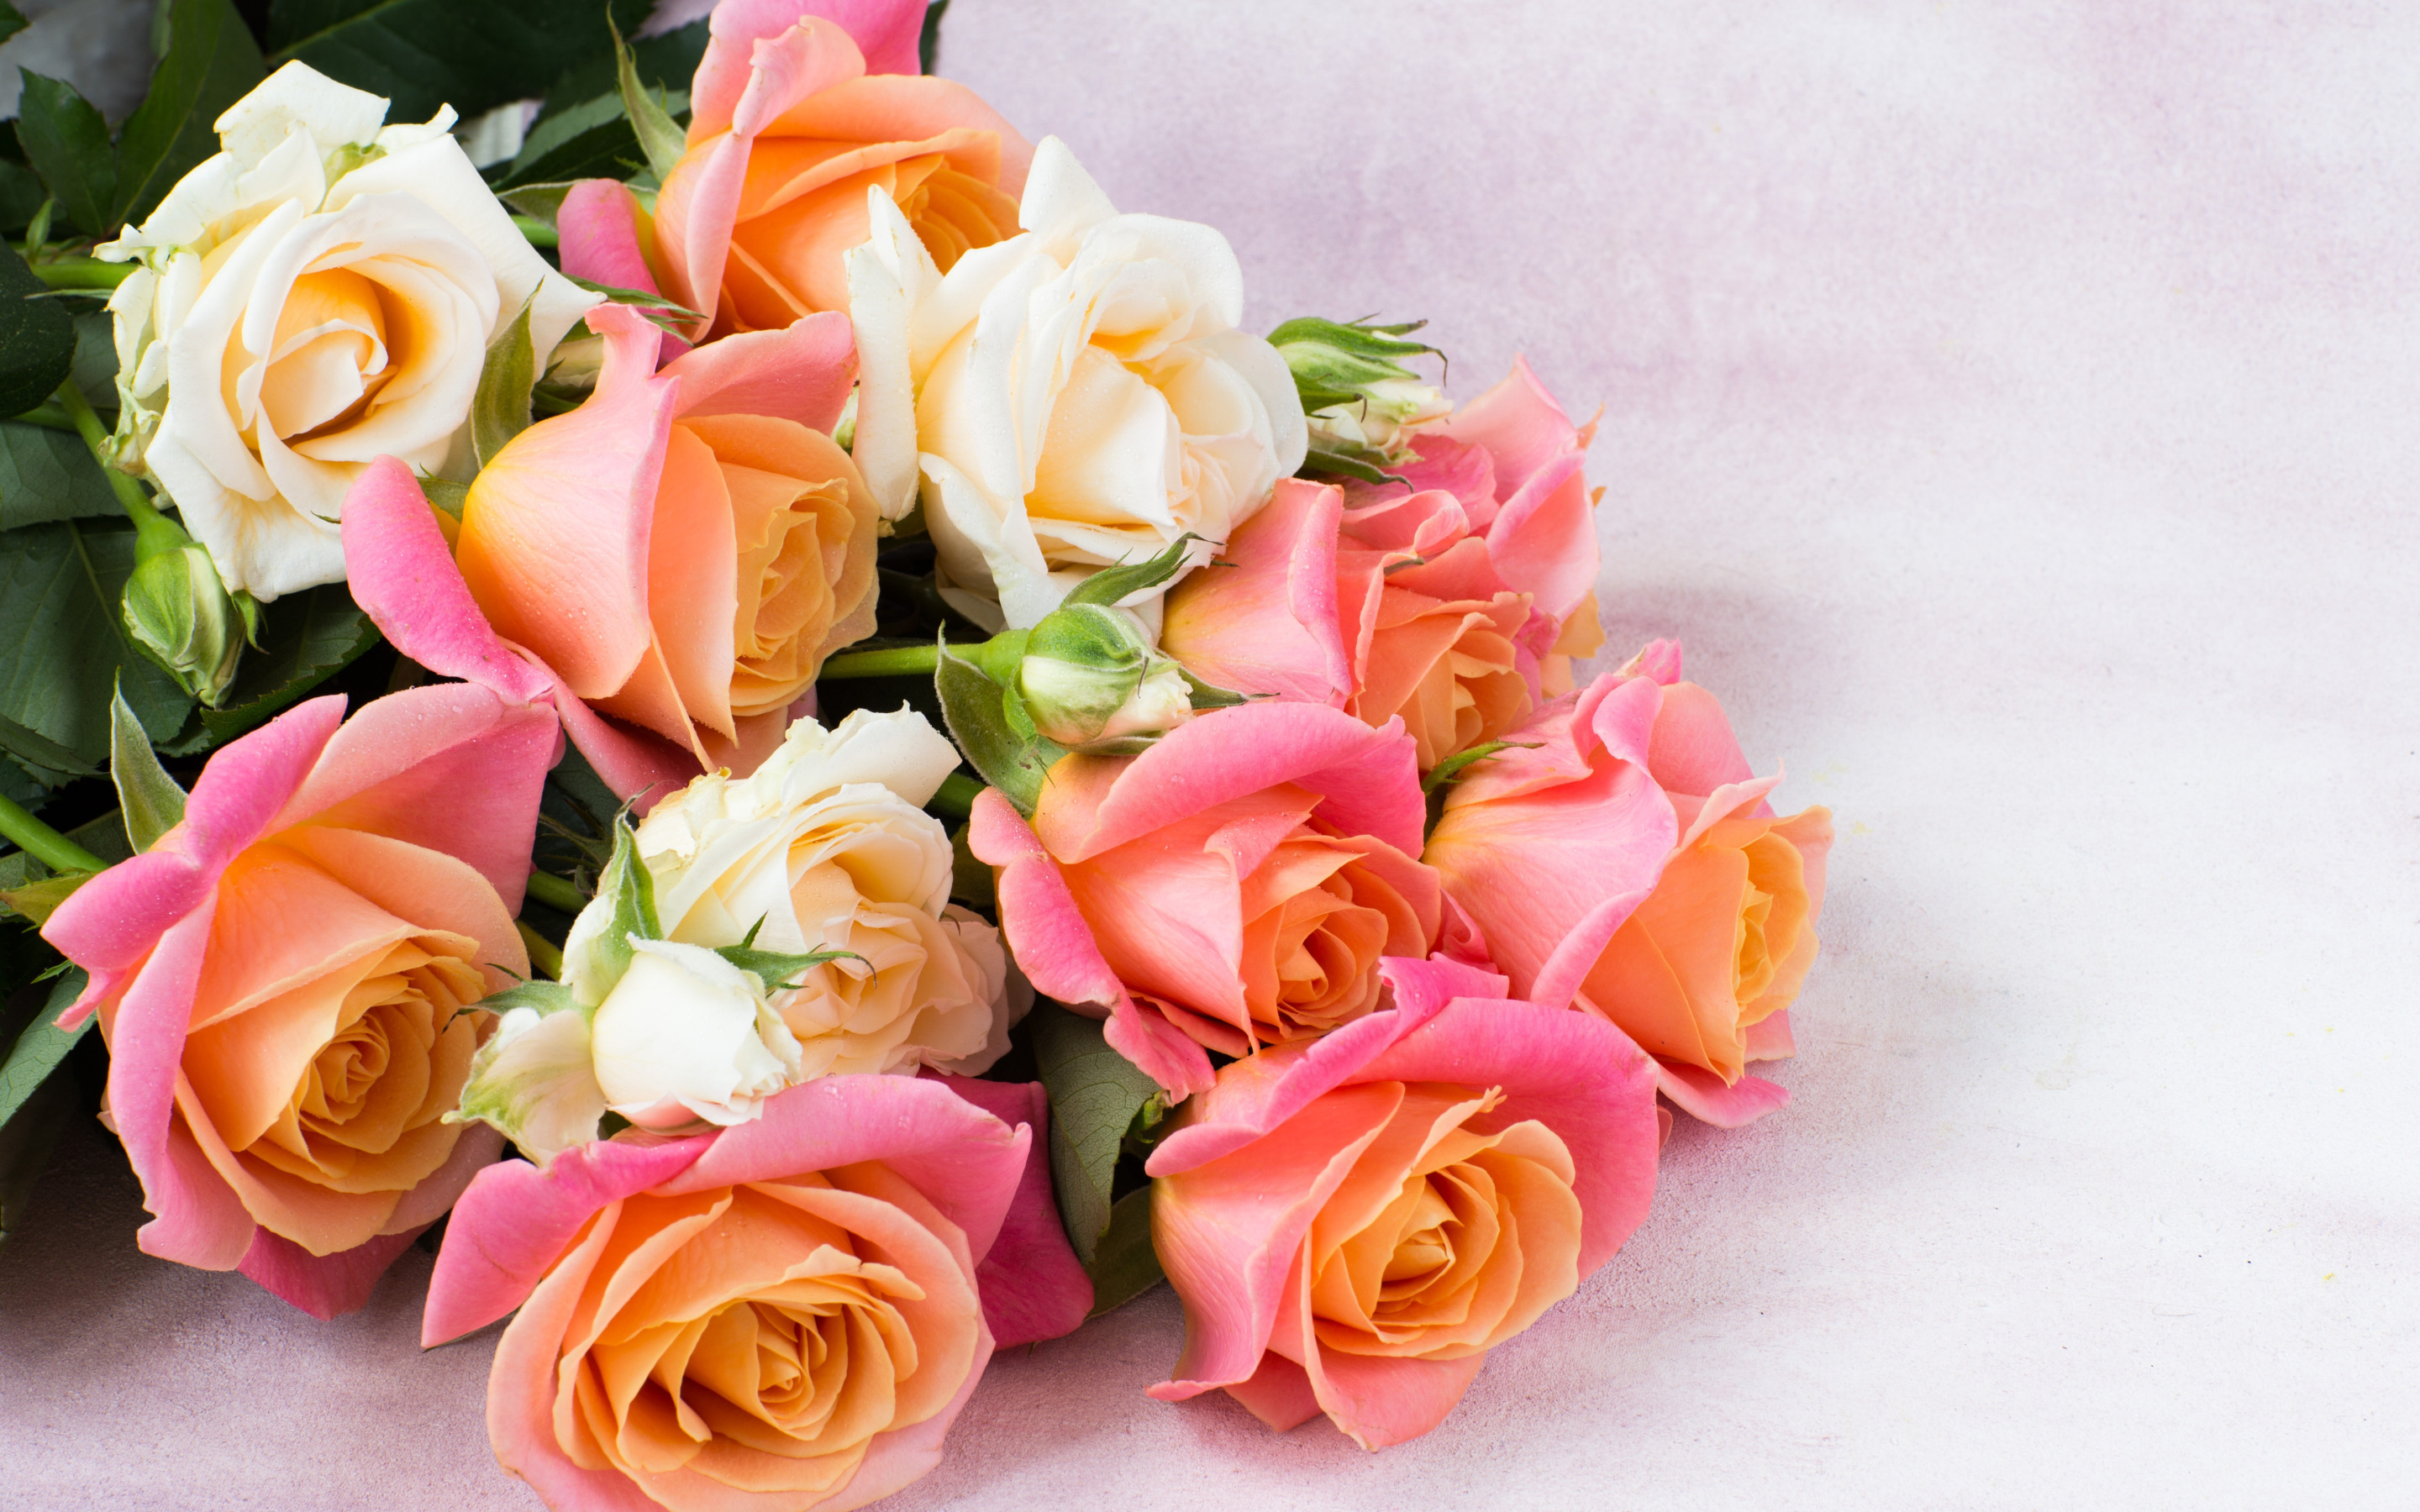 Леночка поздравляю тебя. С днем рождения. С днём рождения Леночка. Букет роз с днем рождения. Поздравляем с днем рождения цветы.